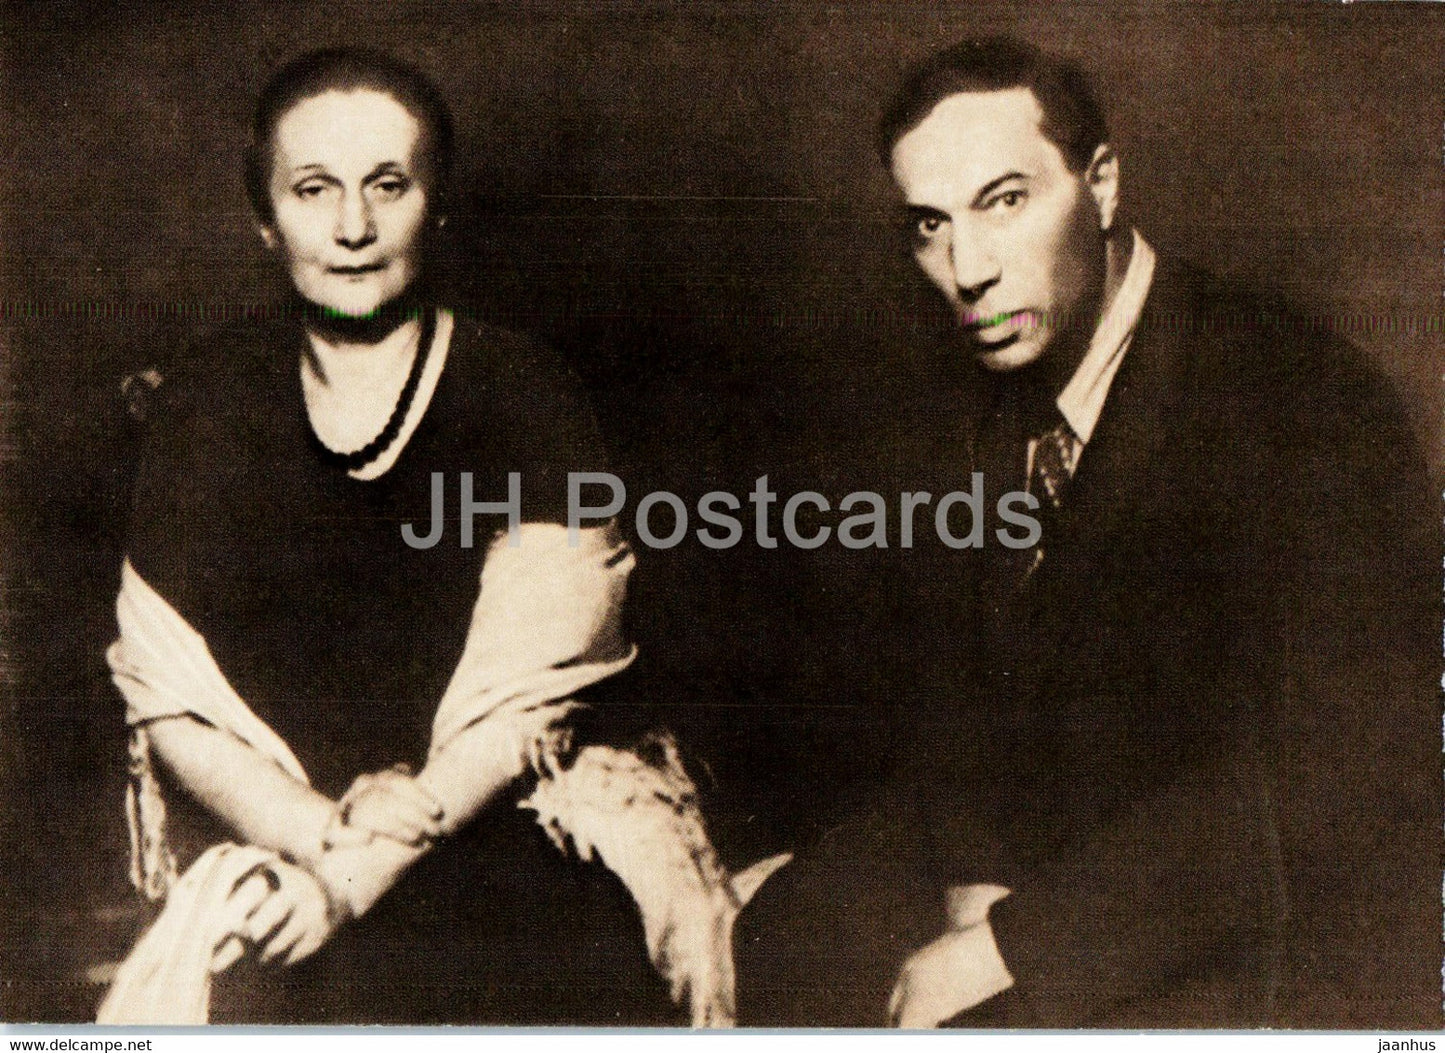 Russian poet Anna Akhmatova - with Boris Pasternak 1946 - 1988 - Russia USSR - unused - JH Postcards